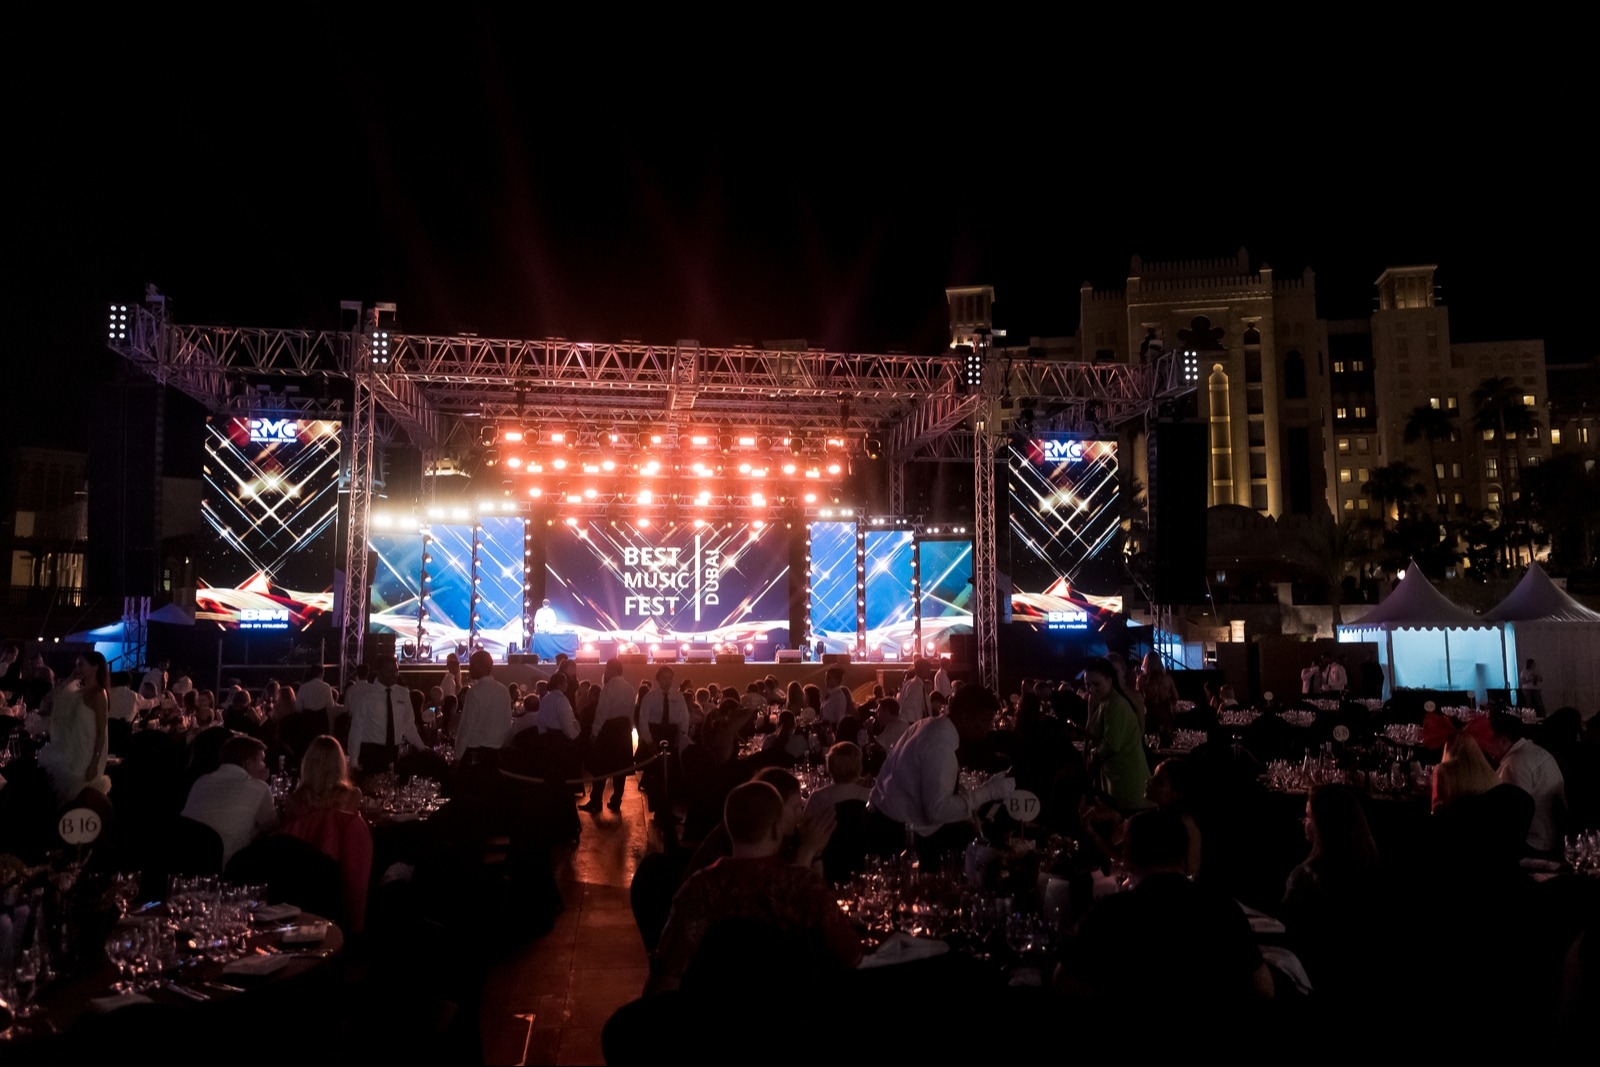 В Дубае проходит масштабный музыкальный фестиваль Best Music Fest